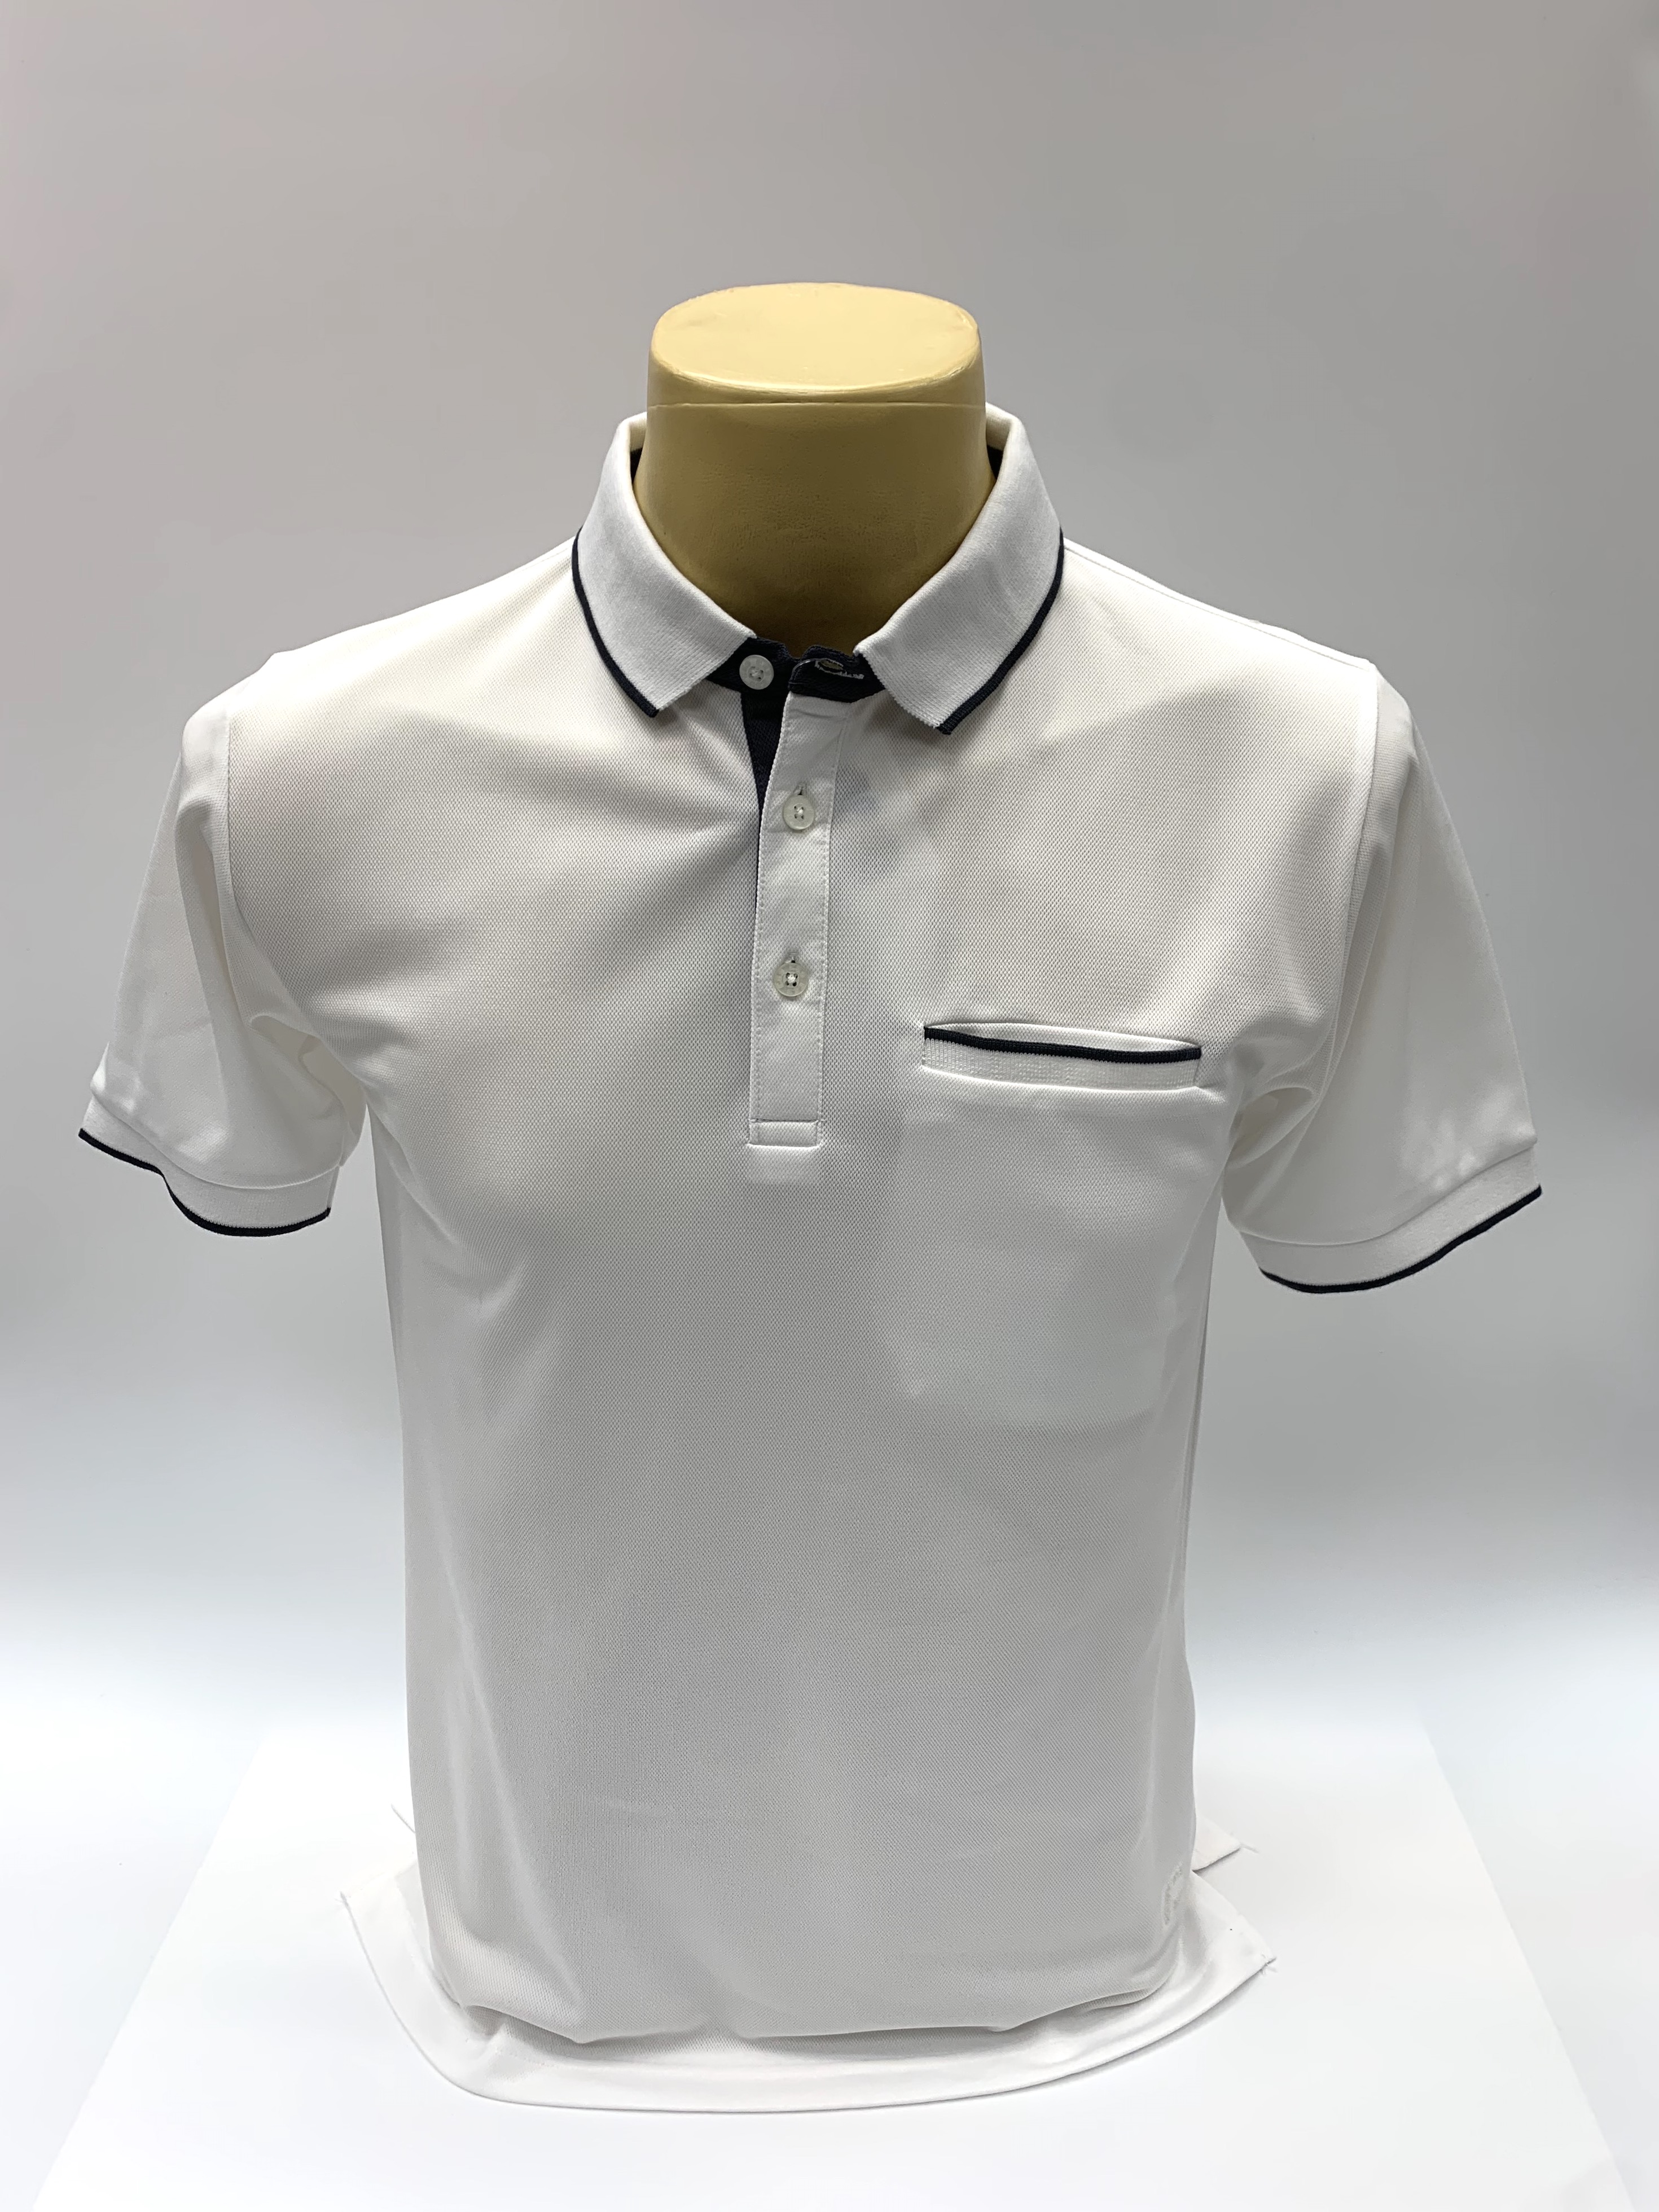 เสื้อคอโปโลแขนสั้น ผ้าดรายเทค (Dry Technology) มีกระเป๋าที่อกยี่ห้อ C59 AIR # 087 เสื้อคอปก เสื้อผู้ชาย เสื้อสีพื้น Kingberry Shop